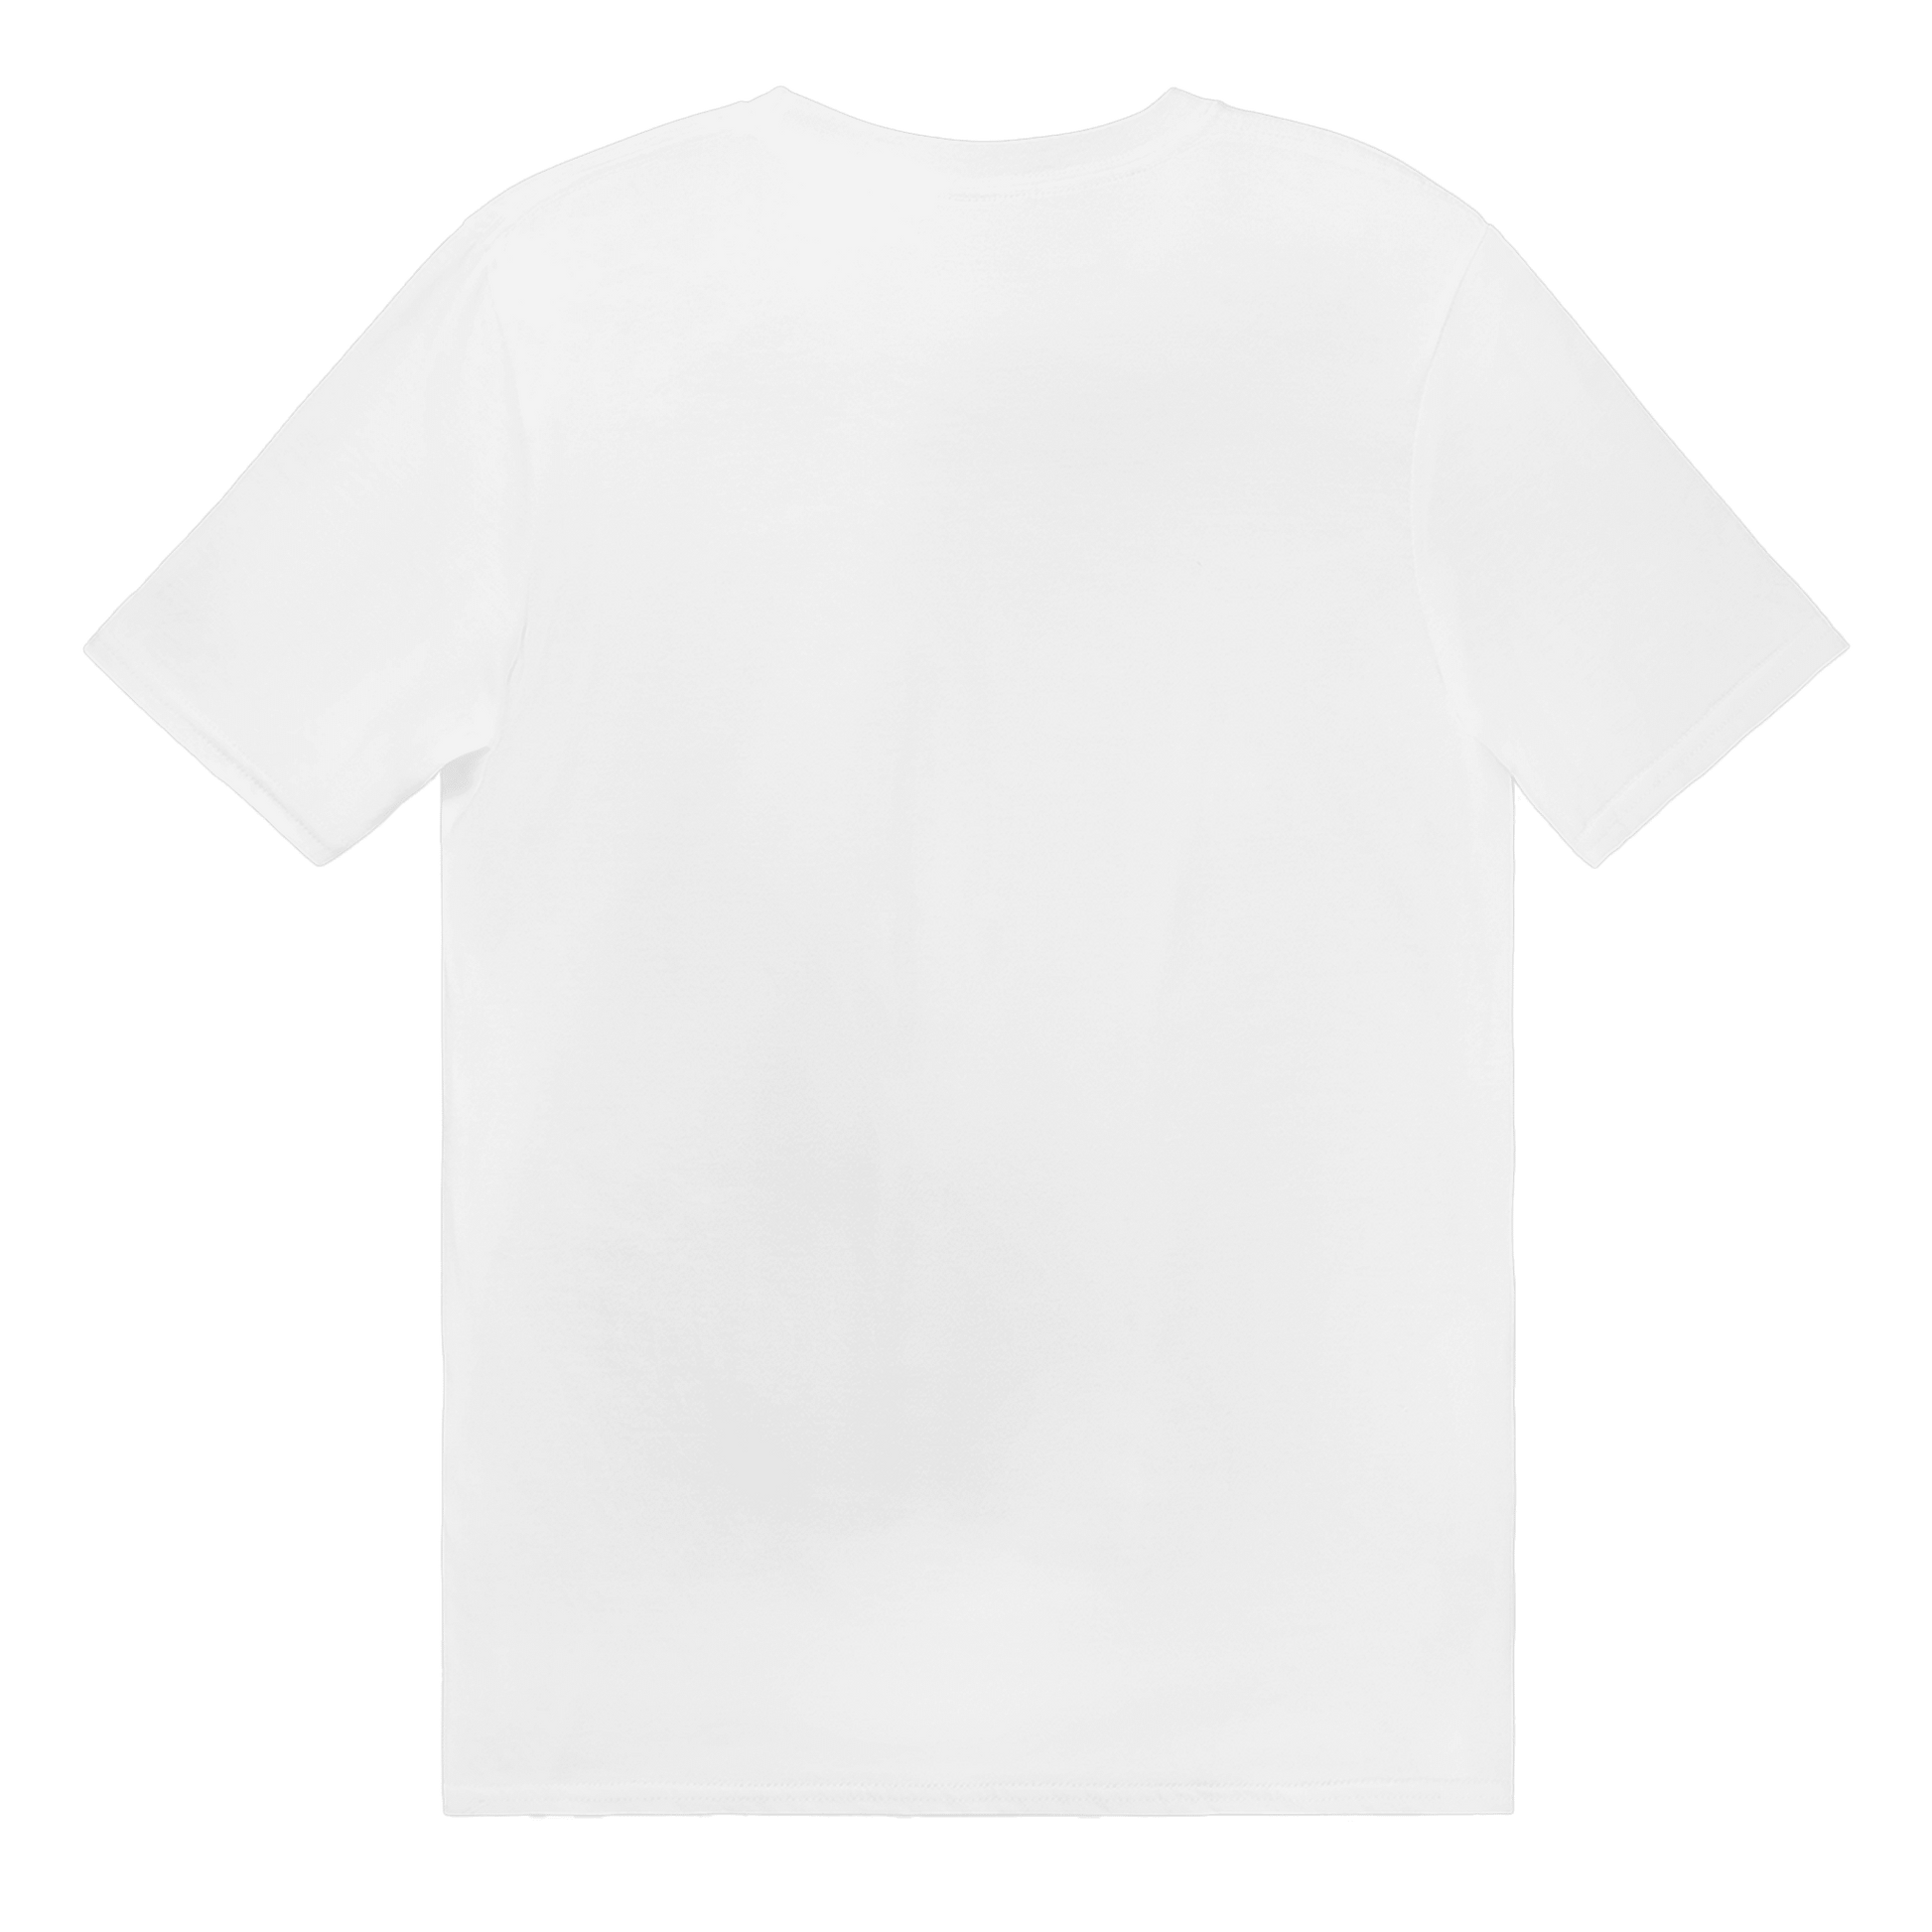 Sill och nubbe - T-shirt 